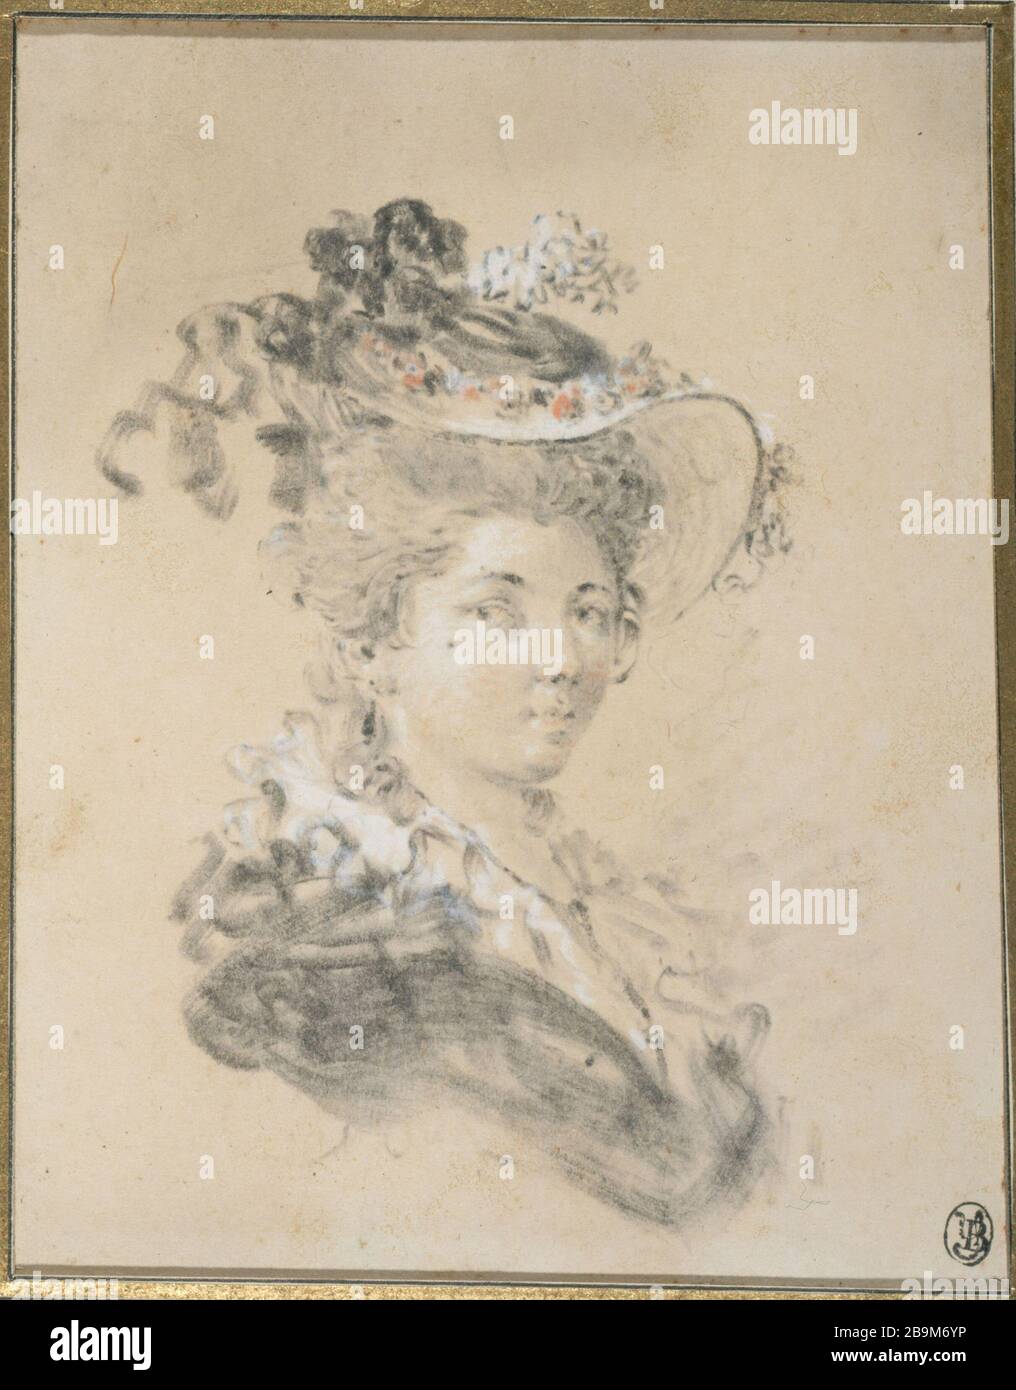 RITRATTO DELLA GIOVANE ATTRIBUÉ à Jean-Honoré Fragonard (1732-1806). 'Portrait de jeune femme'. Dessin au crayon noir avec estompe, rehaussé de pastello. Parigi, museo Cognacq-Jay. Foto Stock